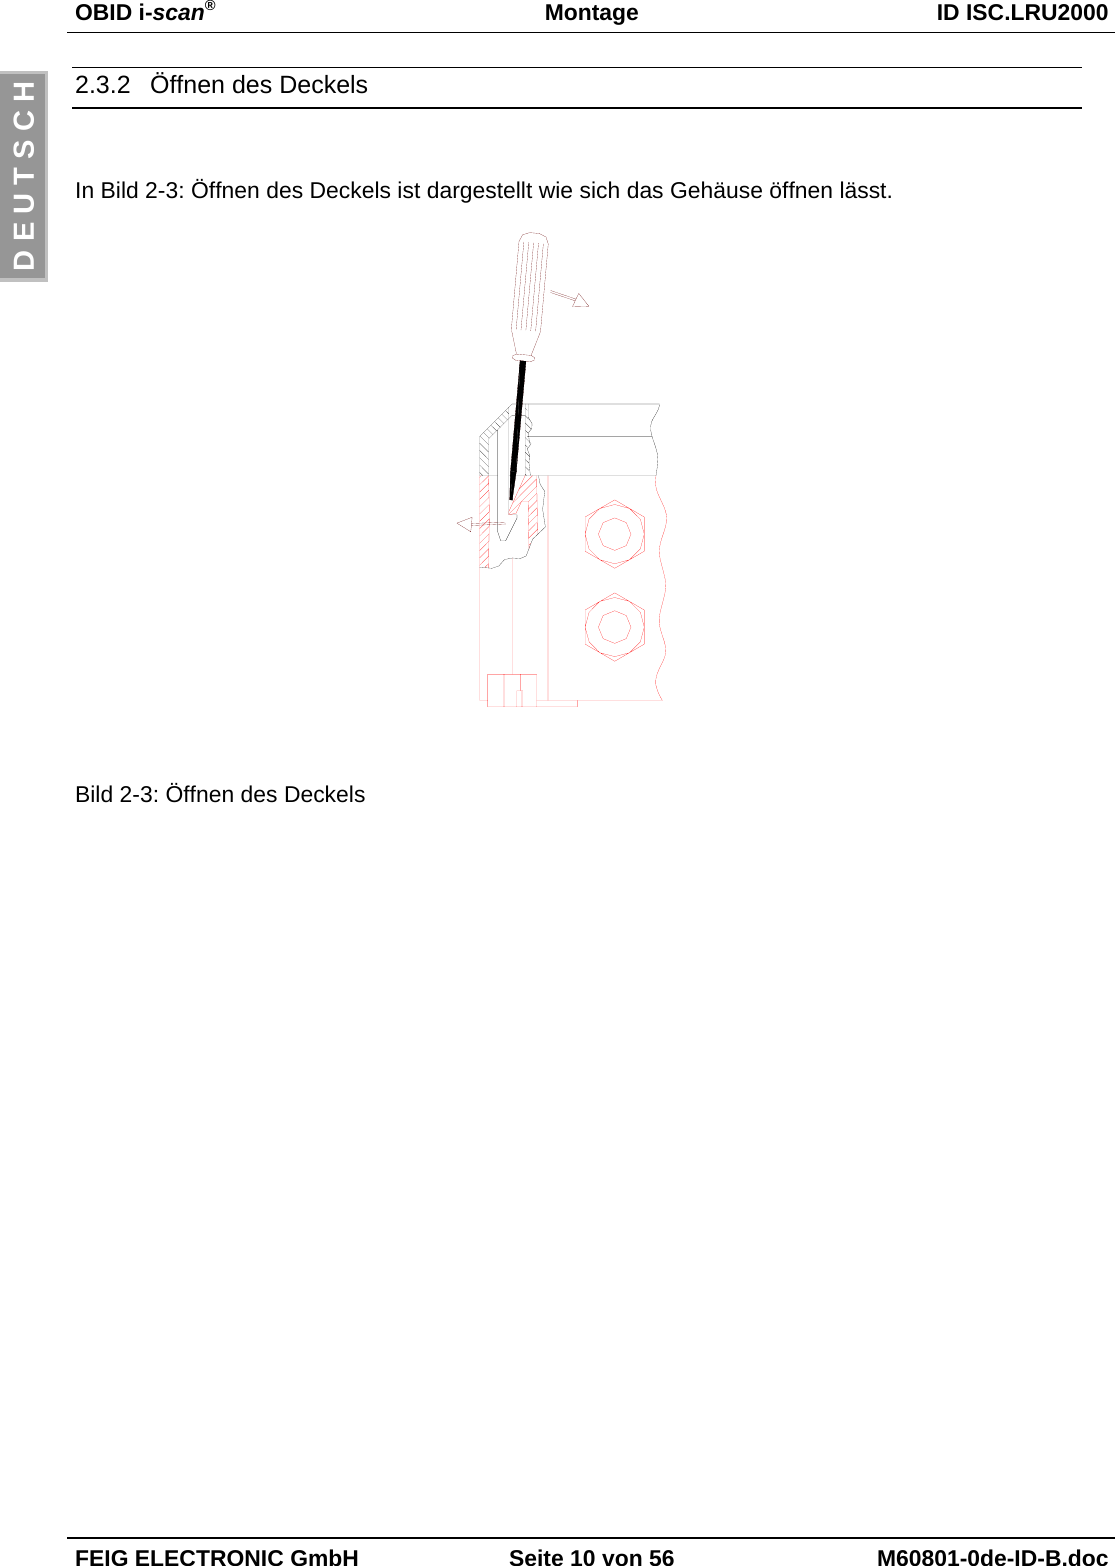 OBID i-scan®Montage ID ISC.LRU2000FEIG ELECTRONIC GmbH Seite 10 von 56 M60801-0de-ID-B.docD E U T S C H2.3.2  Öffnen des DeckelsIn Bild 2-3: Öffnen des Deckels ist dargestellt wie sich das Gehäuse öffnen lässt.Bild 2-3: Öffnen des Deckels